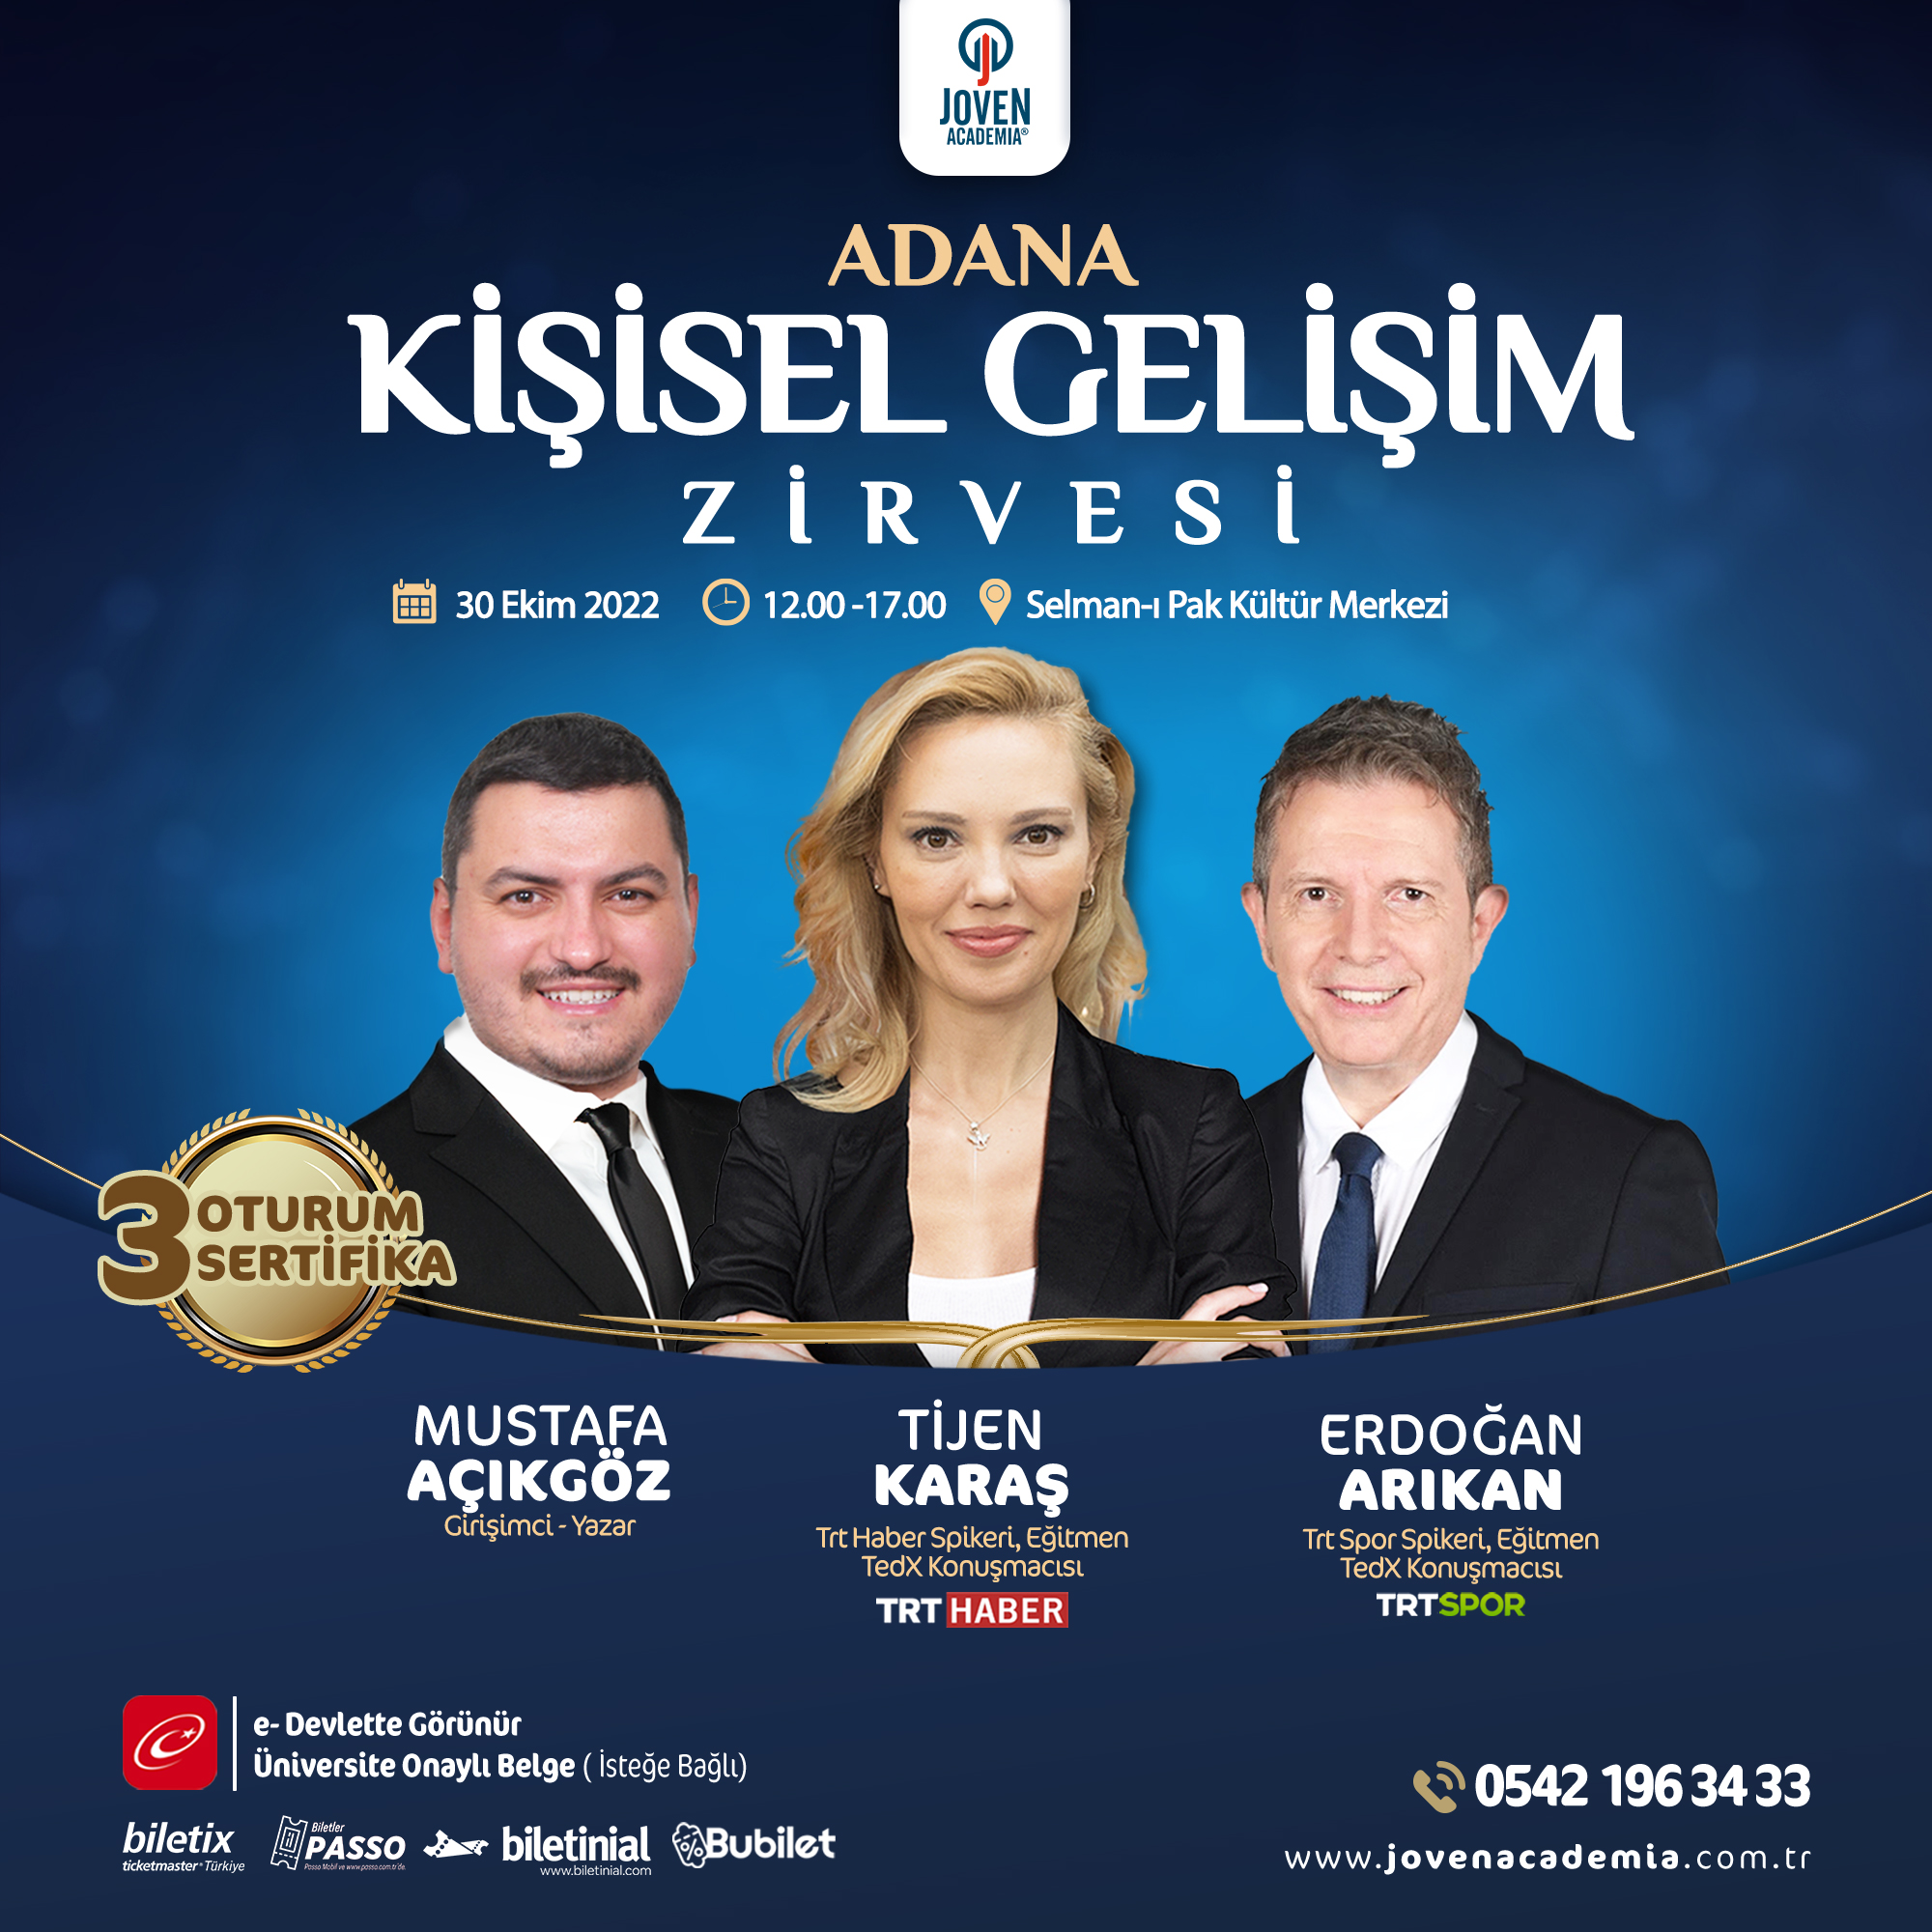 Adana Kişisel Gelişim Zirvesi (30 Ekim 2022)